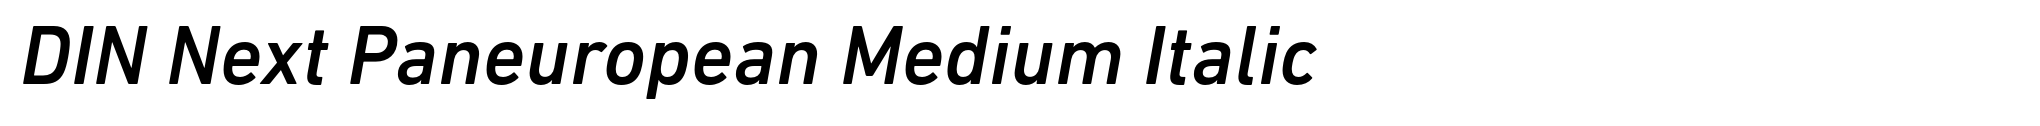 DIN Next Paneuropean Medium Italic image